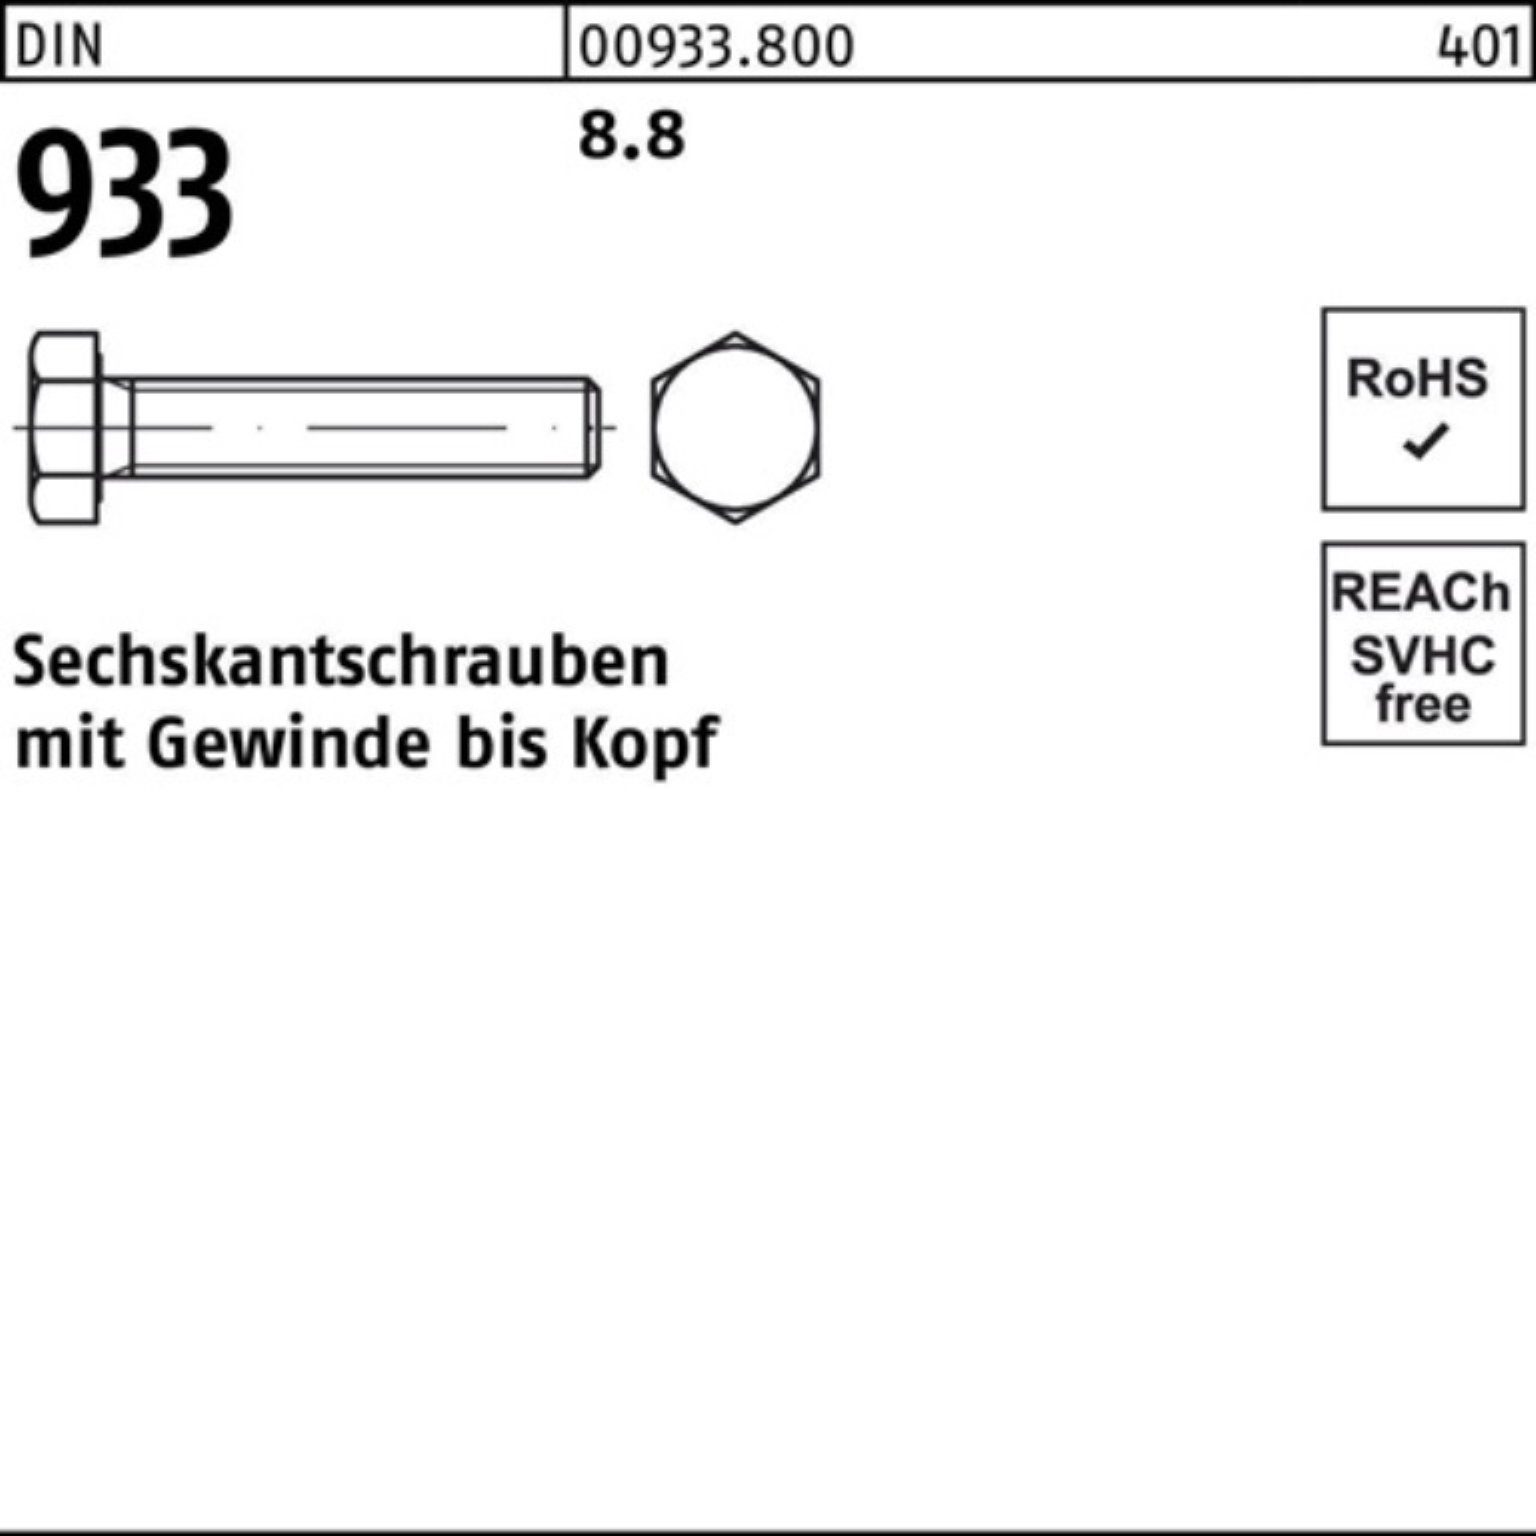 Stück M33x Sechskantschraube 80 Sechskantschraube 8.8 DIN Pack 933 1 Reyher VG 8 DIN 933 100er